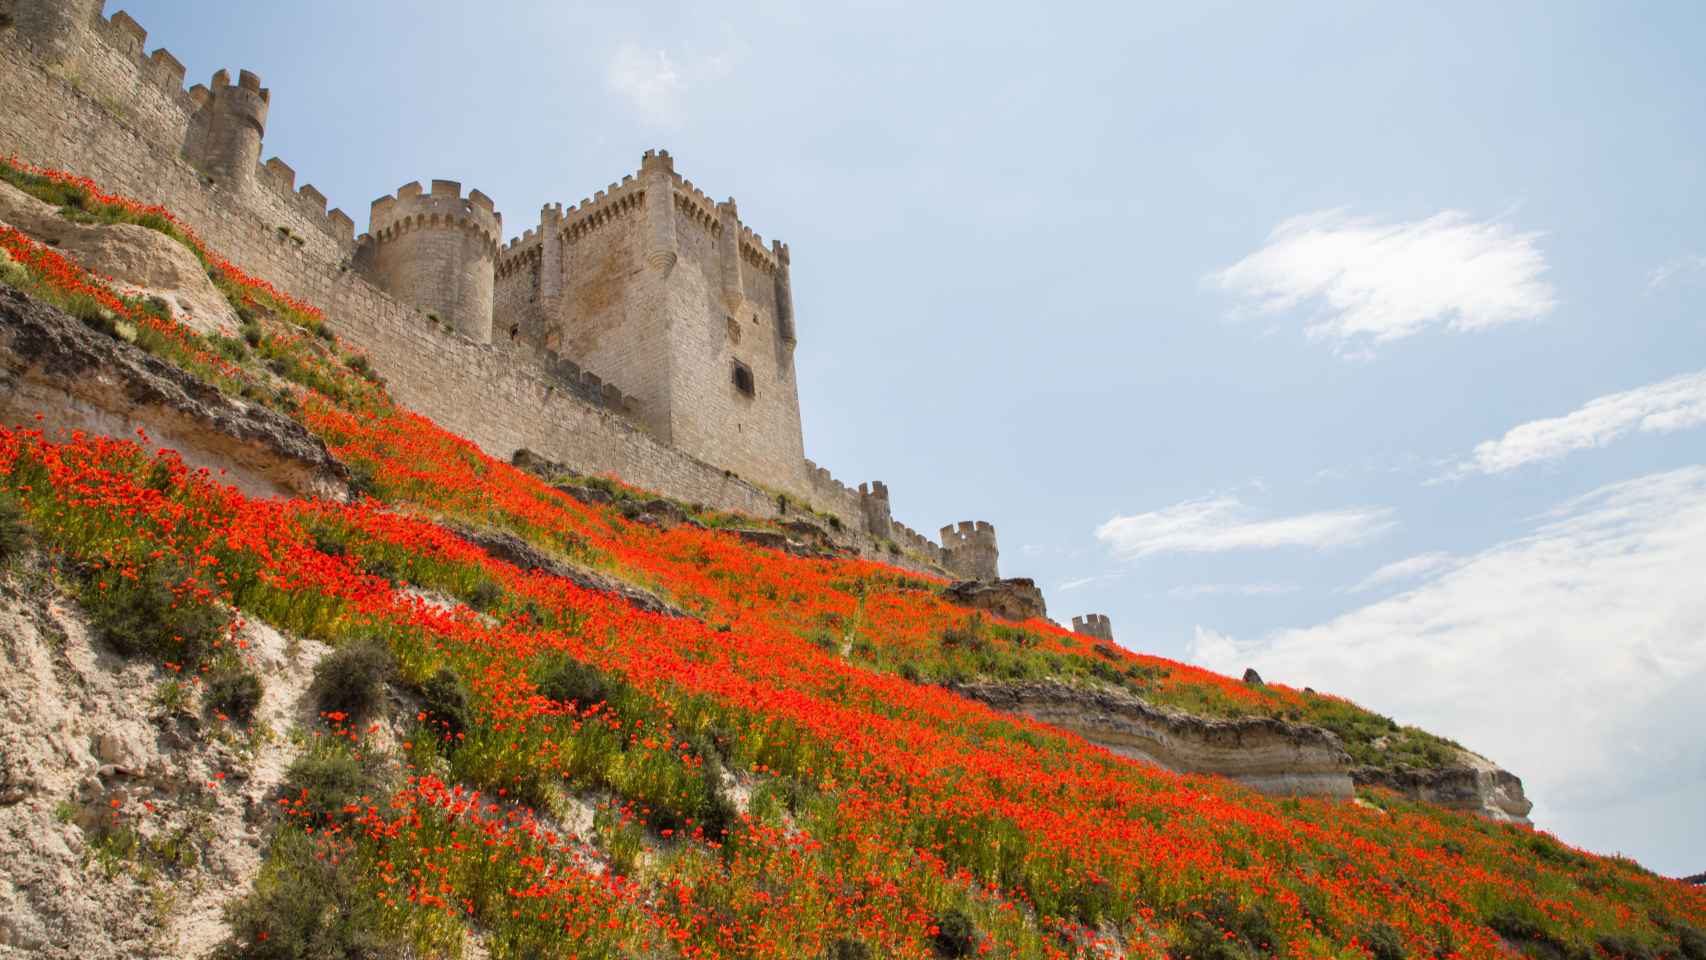 El Castillo de Peñafiel